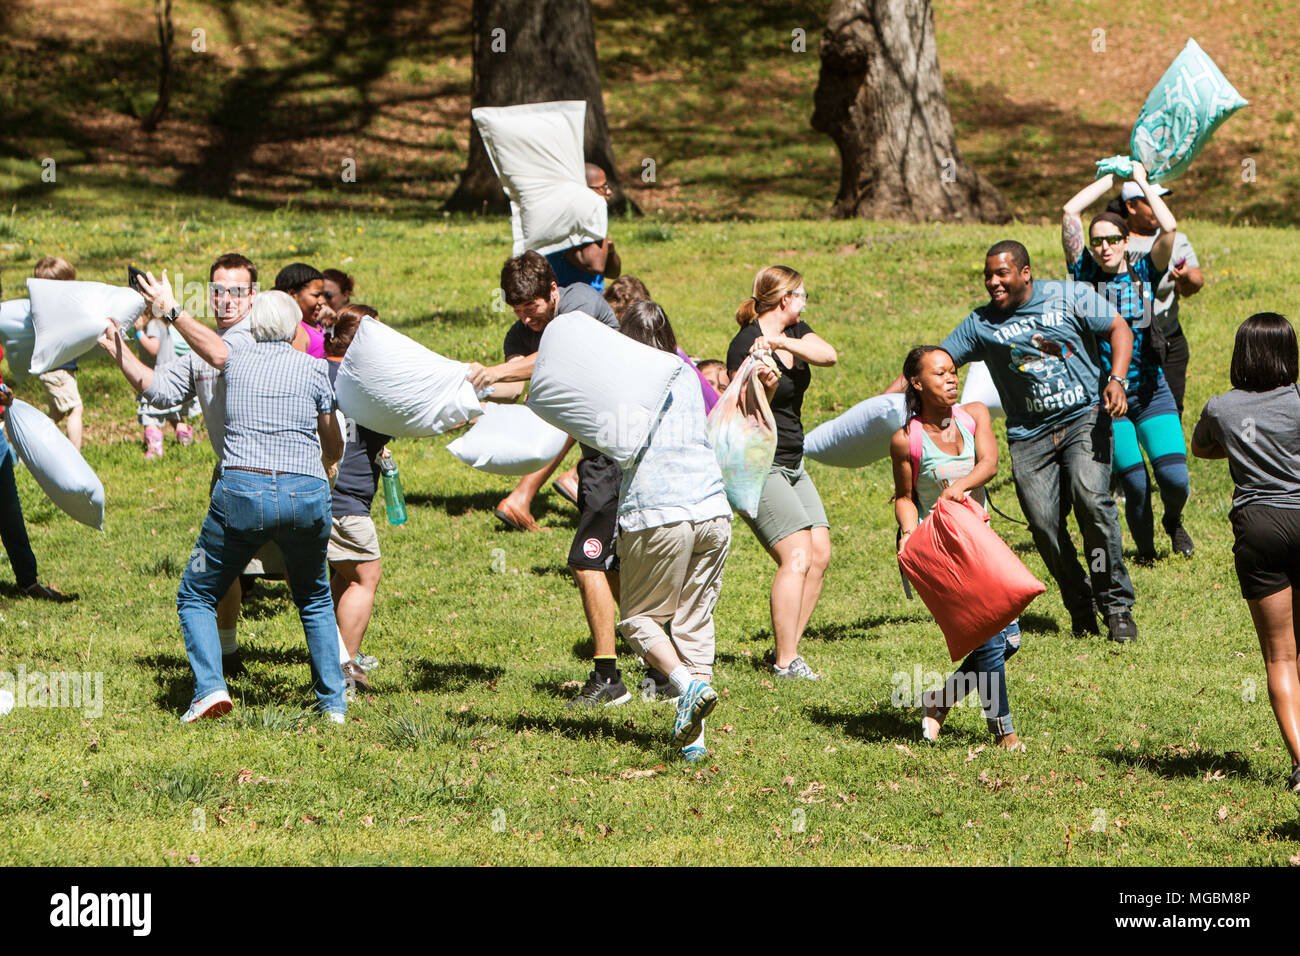 Mehrere Personen versuchen, sich gegenseitig mit Kissen auf internationalen Kissen zu schlagen, Kämpfen, im Grant Park am 1. April 2017 in Atlanta, GA. Stockfoto